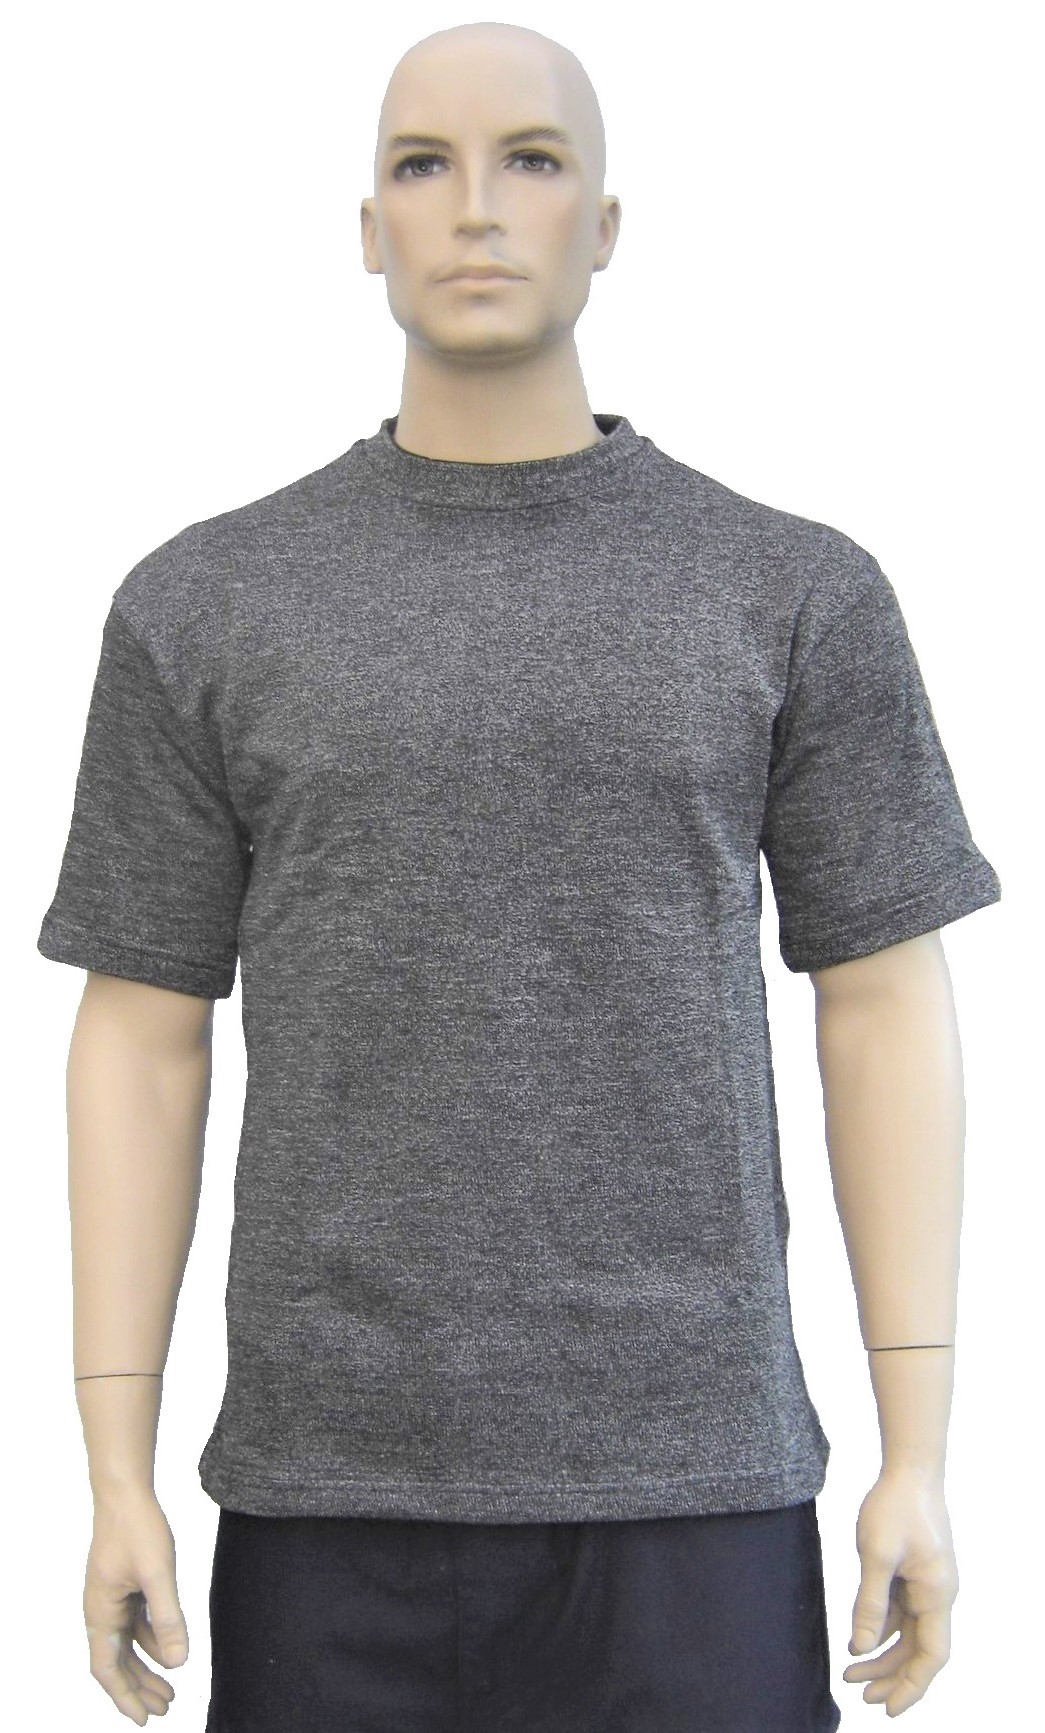 T-shirt gris résistant aux coupures - maillot de corps